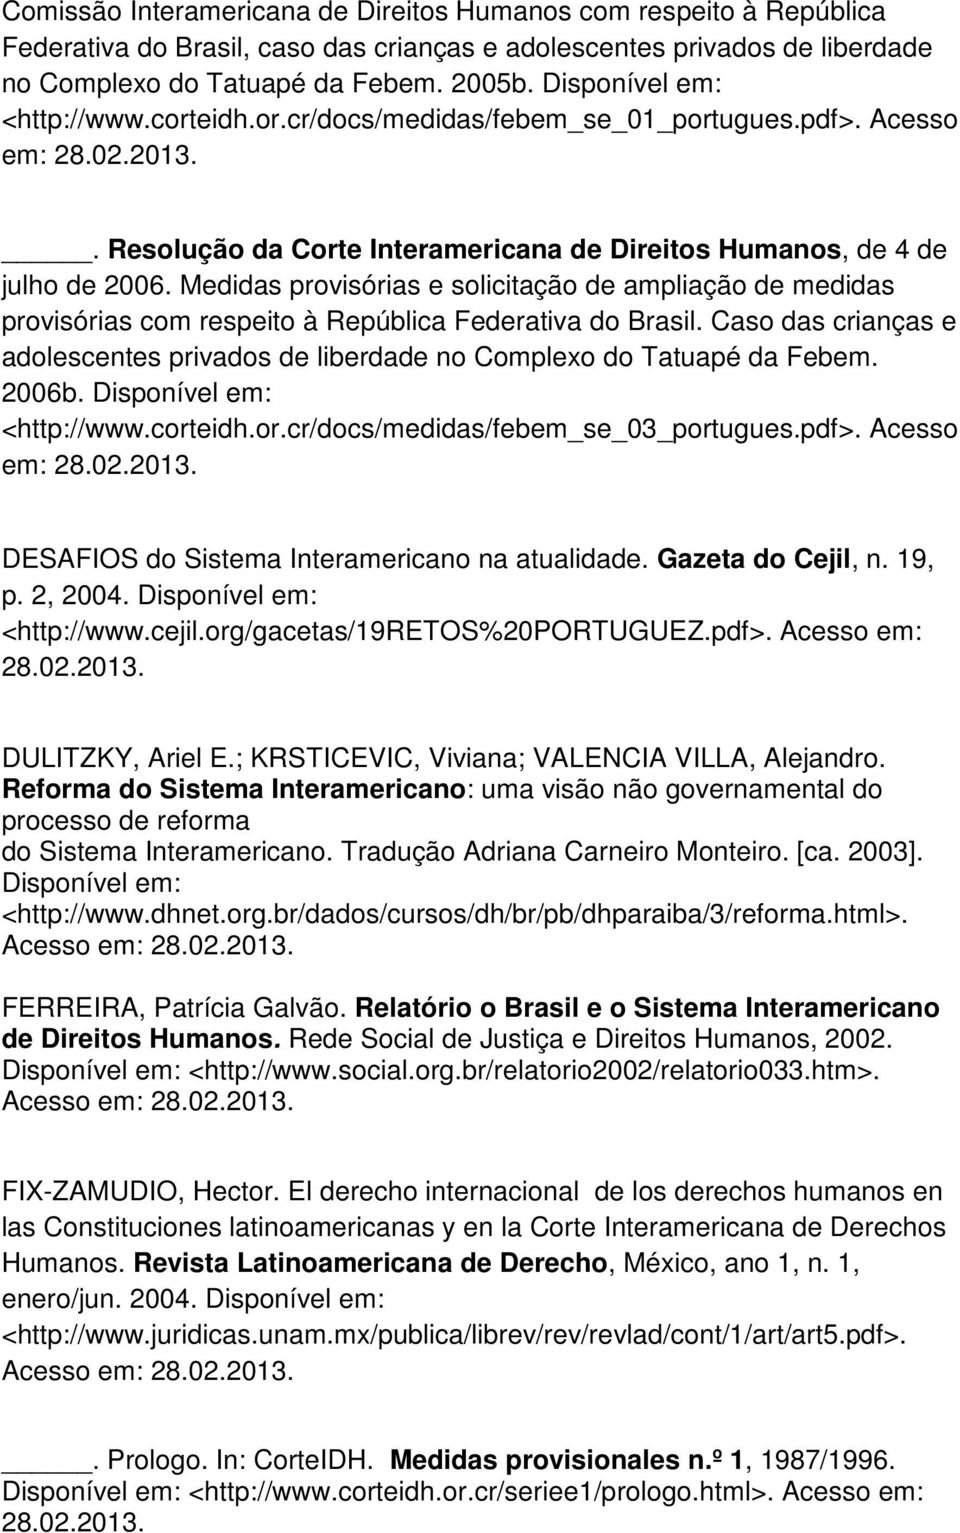 Medidas provisórias e solicitação de ampliação de medidas provisórias com respeito à República Federativa do Brasil.